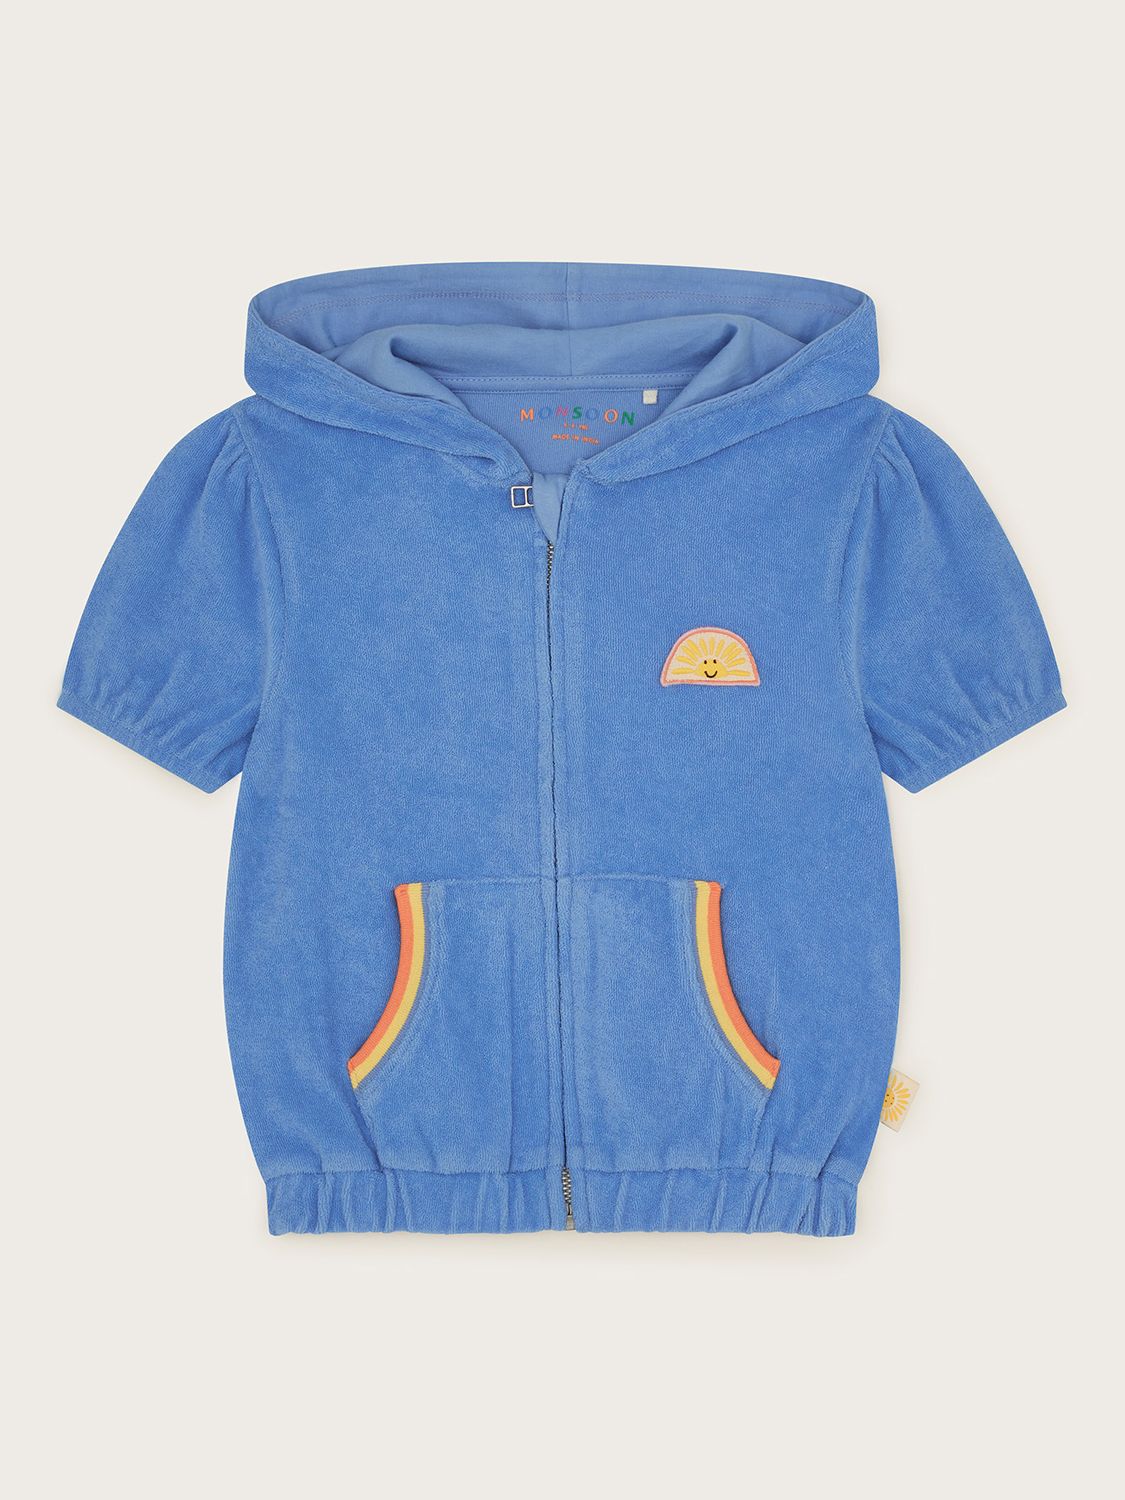 Buy Monsoon Kids' Towelling Zip Up Short Sleeve Hoodie, Blue Online at johnlewis.com